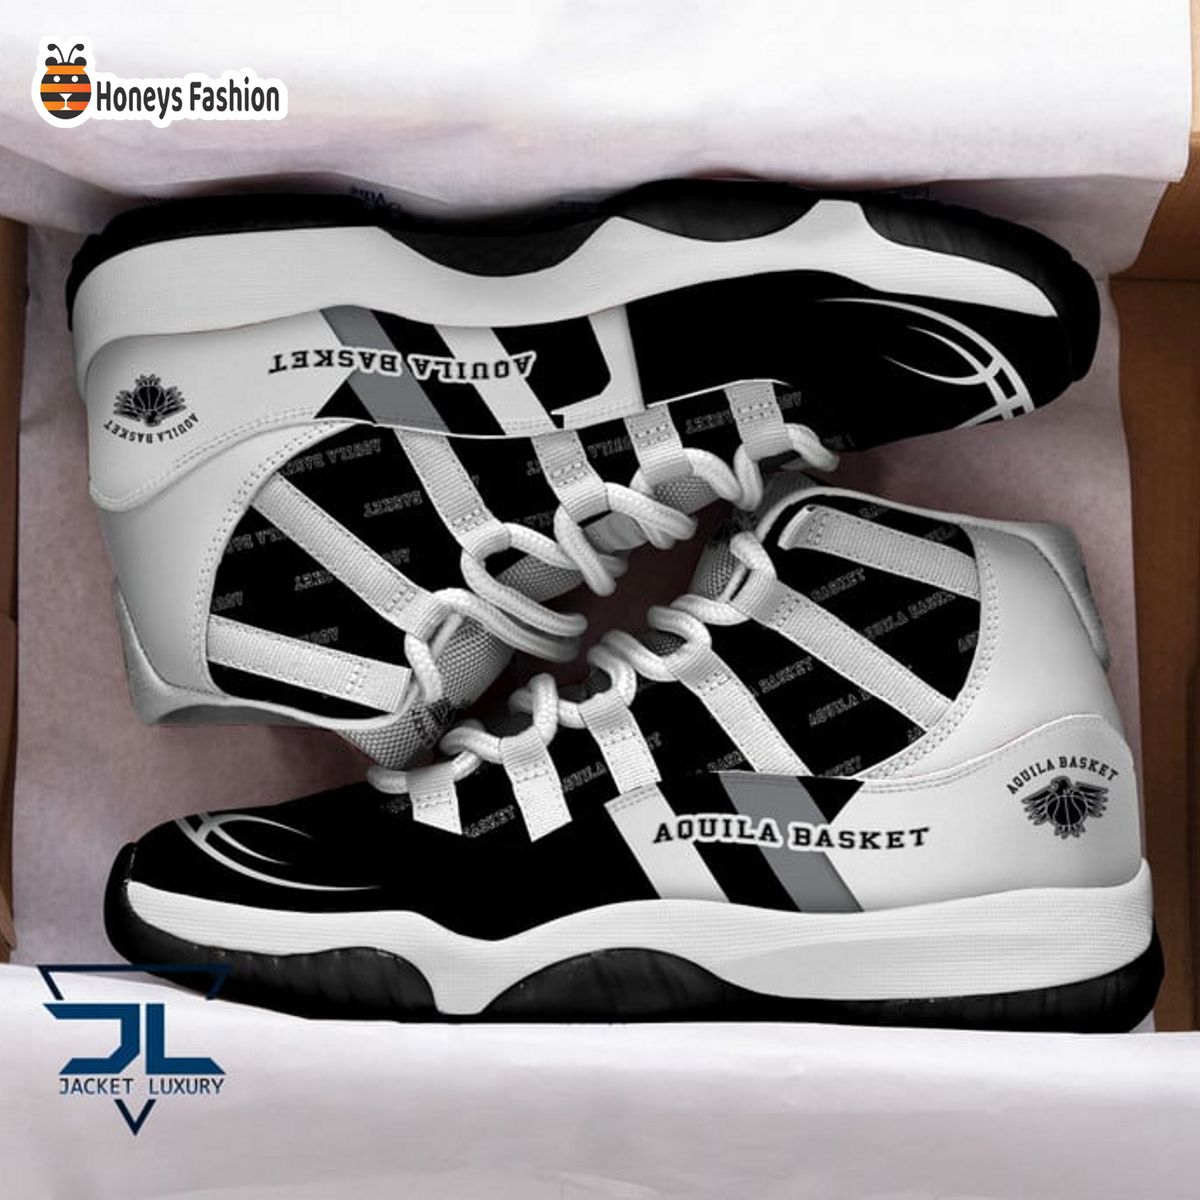 Aquila Basket Trento Air Jordan 11 Sneaker